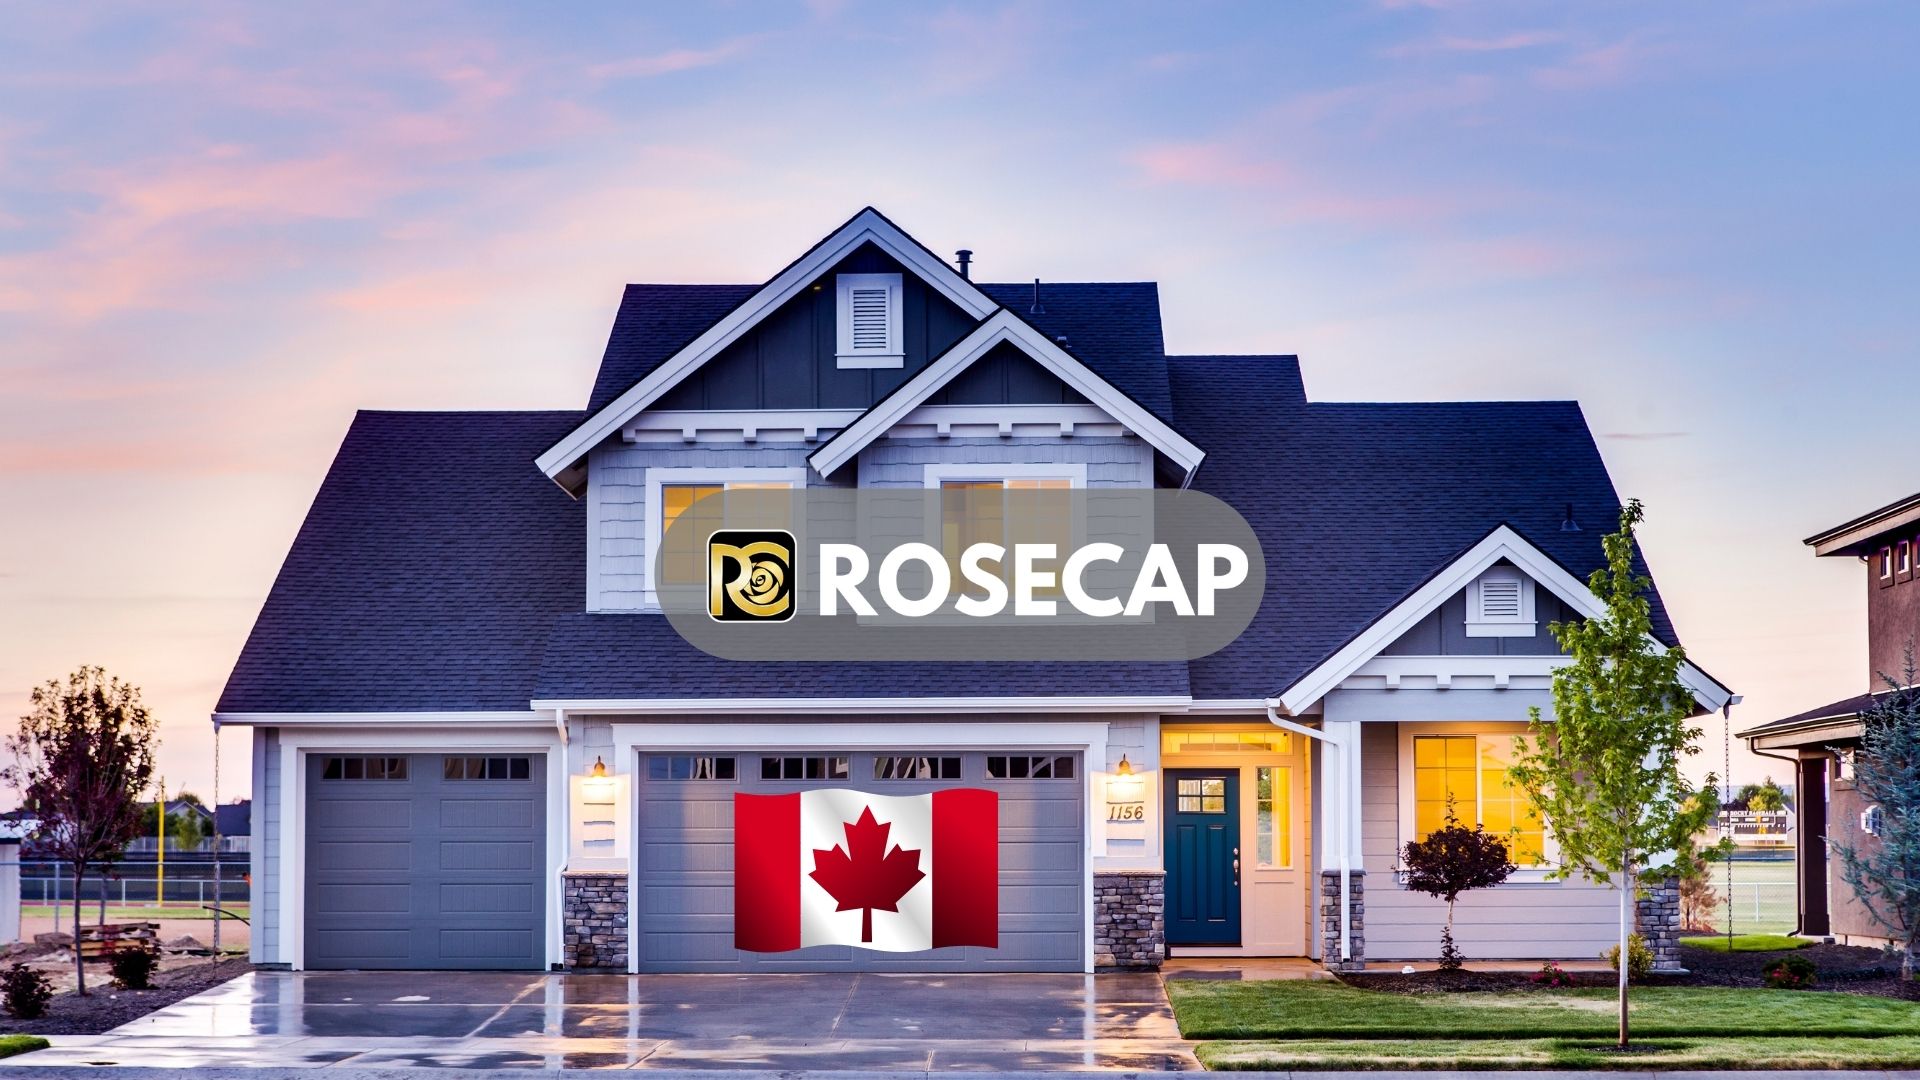 خرید خانه در کانادا